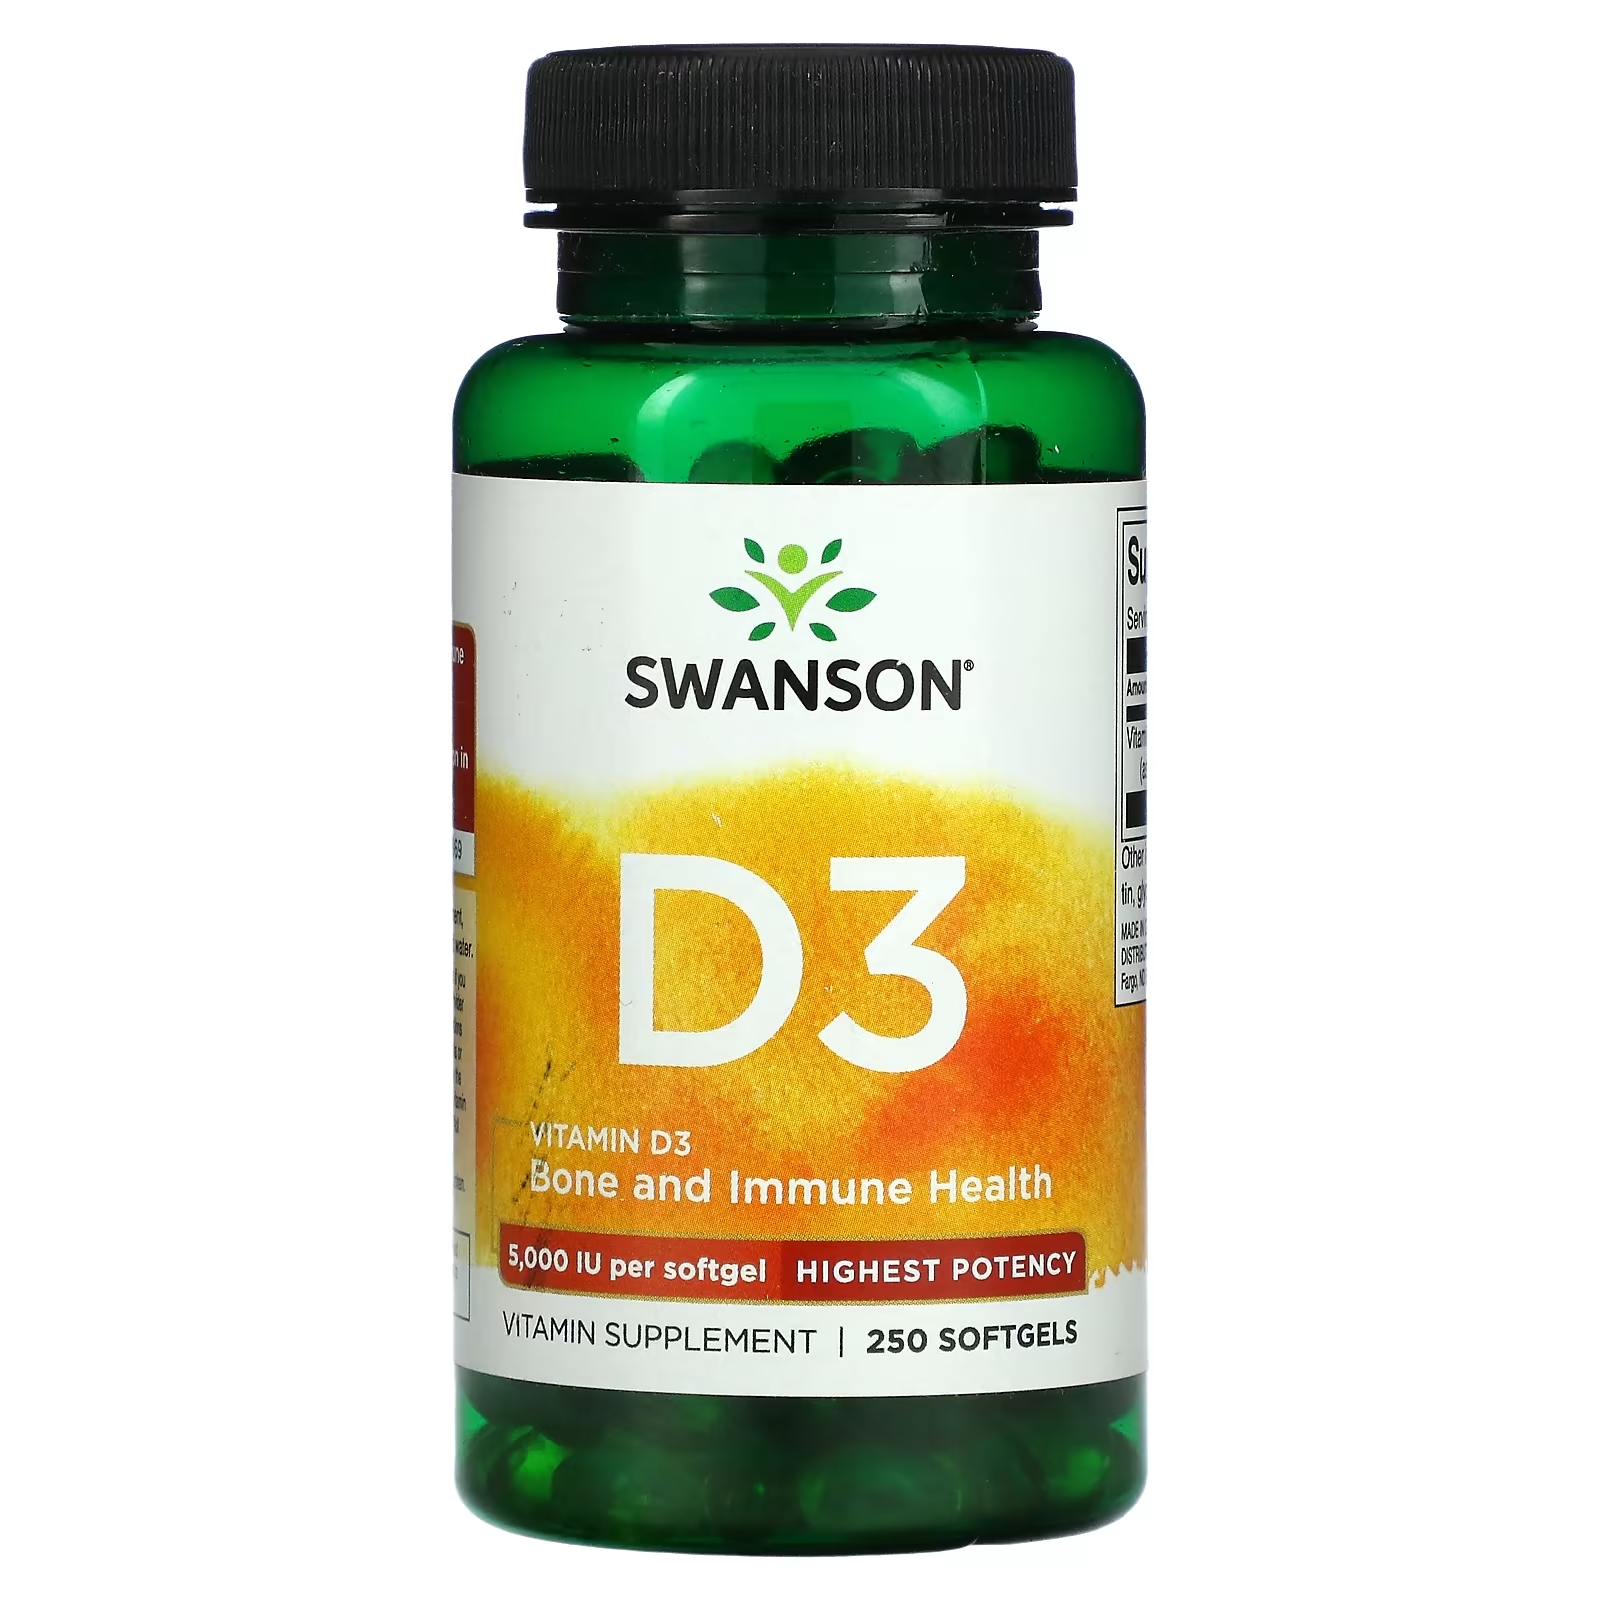 Swanson Витамин D3 для поддержки здоровья и иммунитета высочайшая эффективность 5000 МЕ, 250 мягких таблеток swanson d3 с кокосовым маслом высокая эффективность 2000 ме 60 мягких таблеток